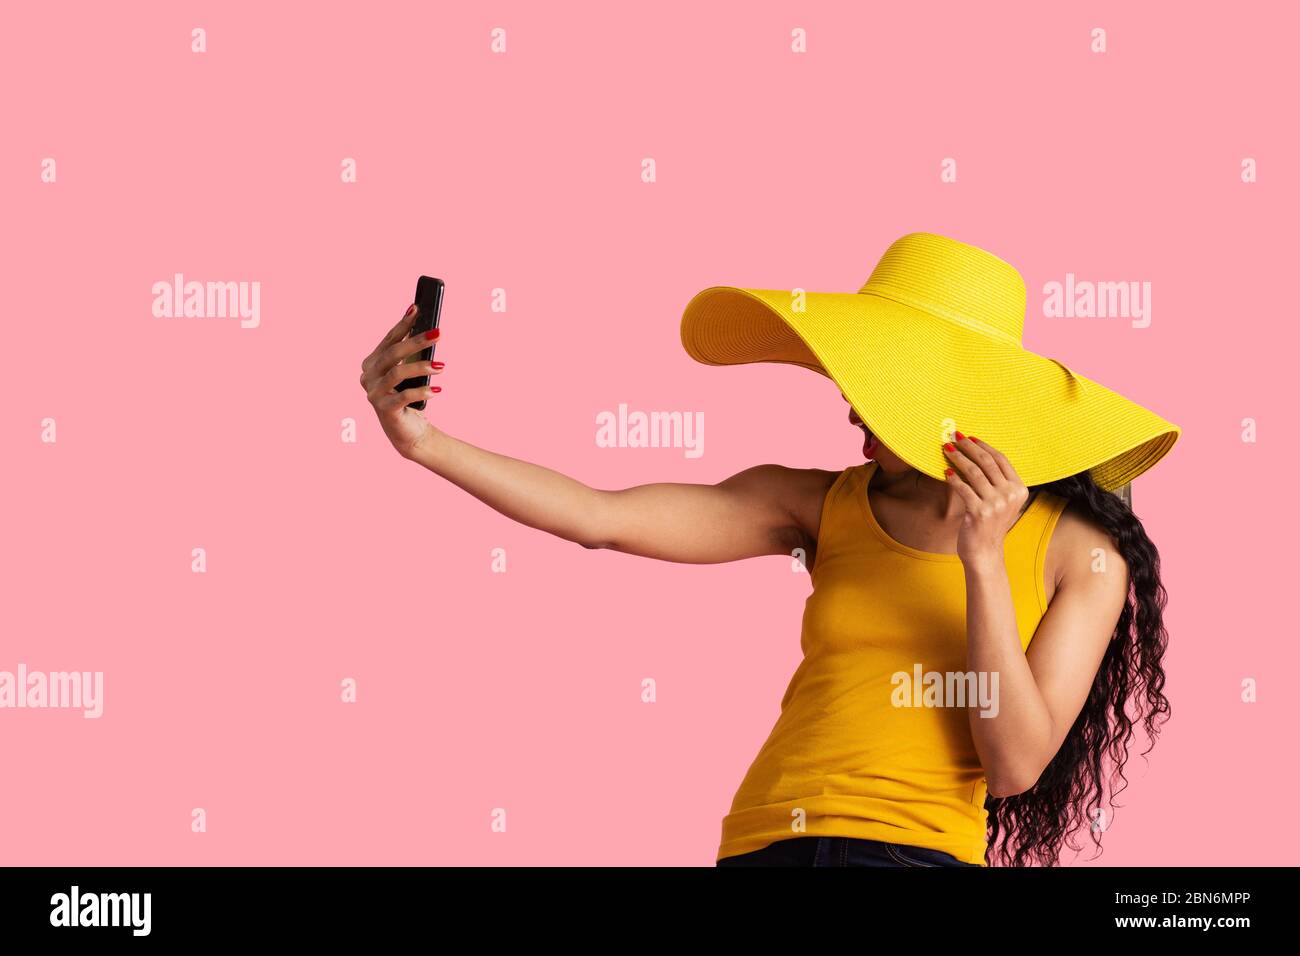 Portrait d'une jeune femme aux cheveux noirs et un grand chapeau jaune d'été prenant selfie avec son smartphone Banque D'Images